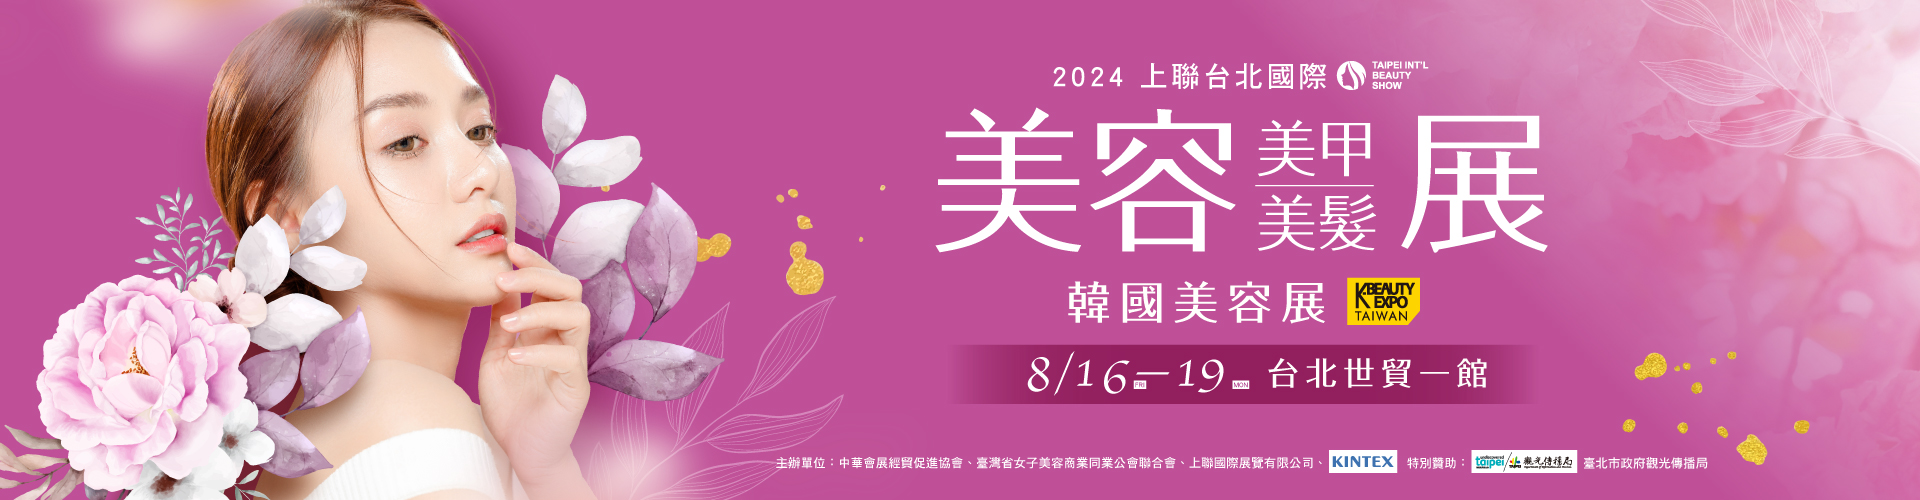 2024上聯台北國際美容美甲美髮展2024韓國美容展